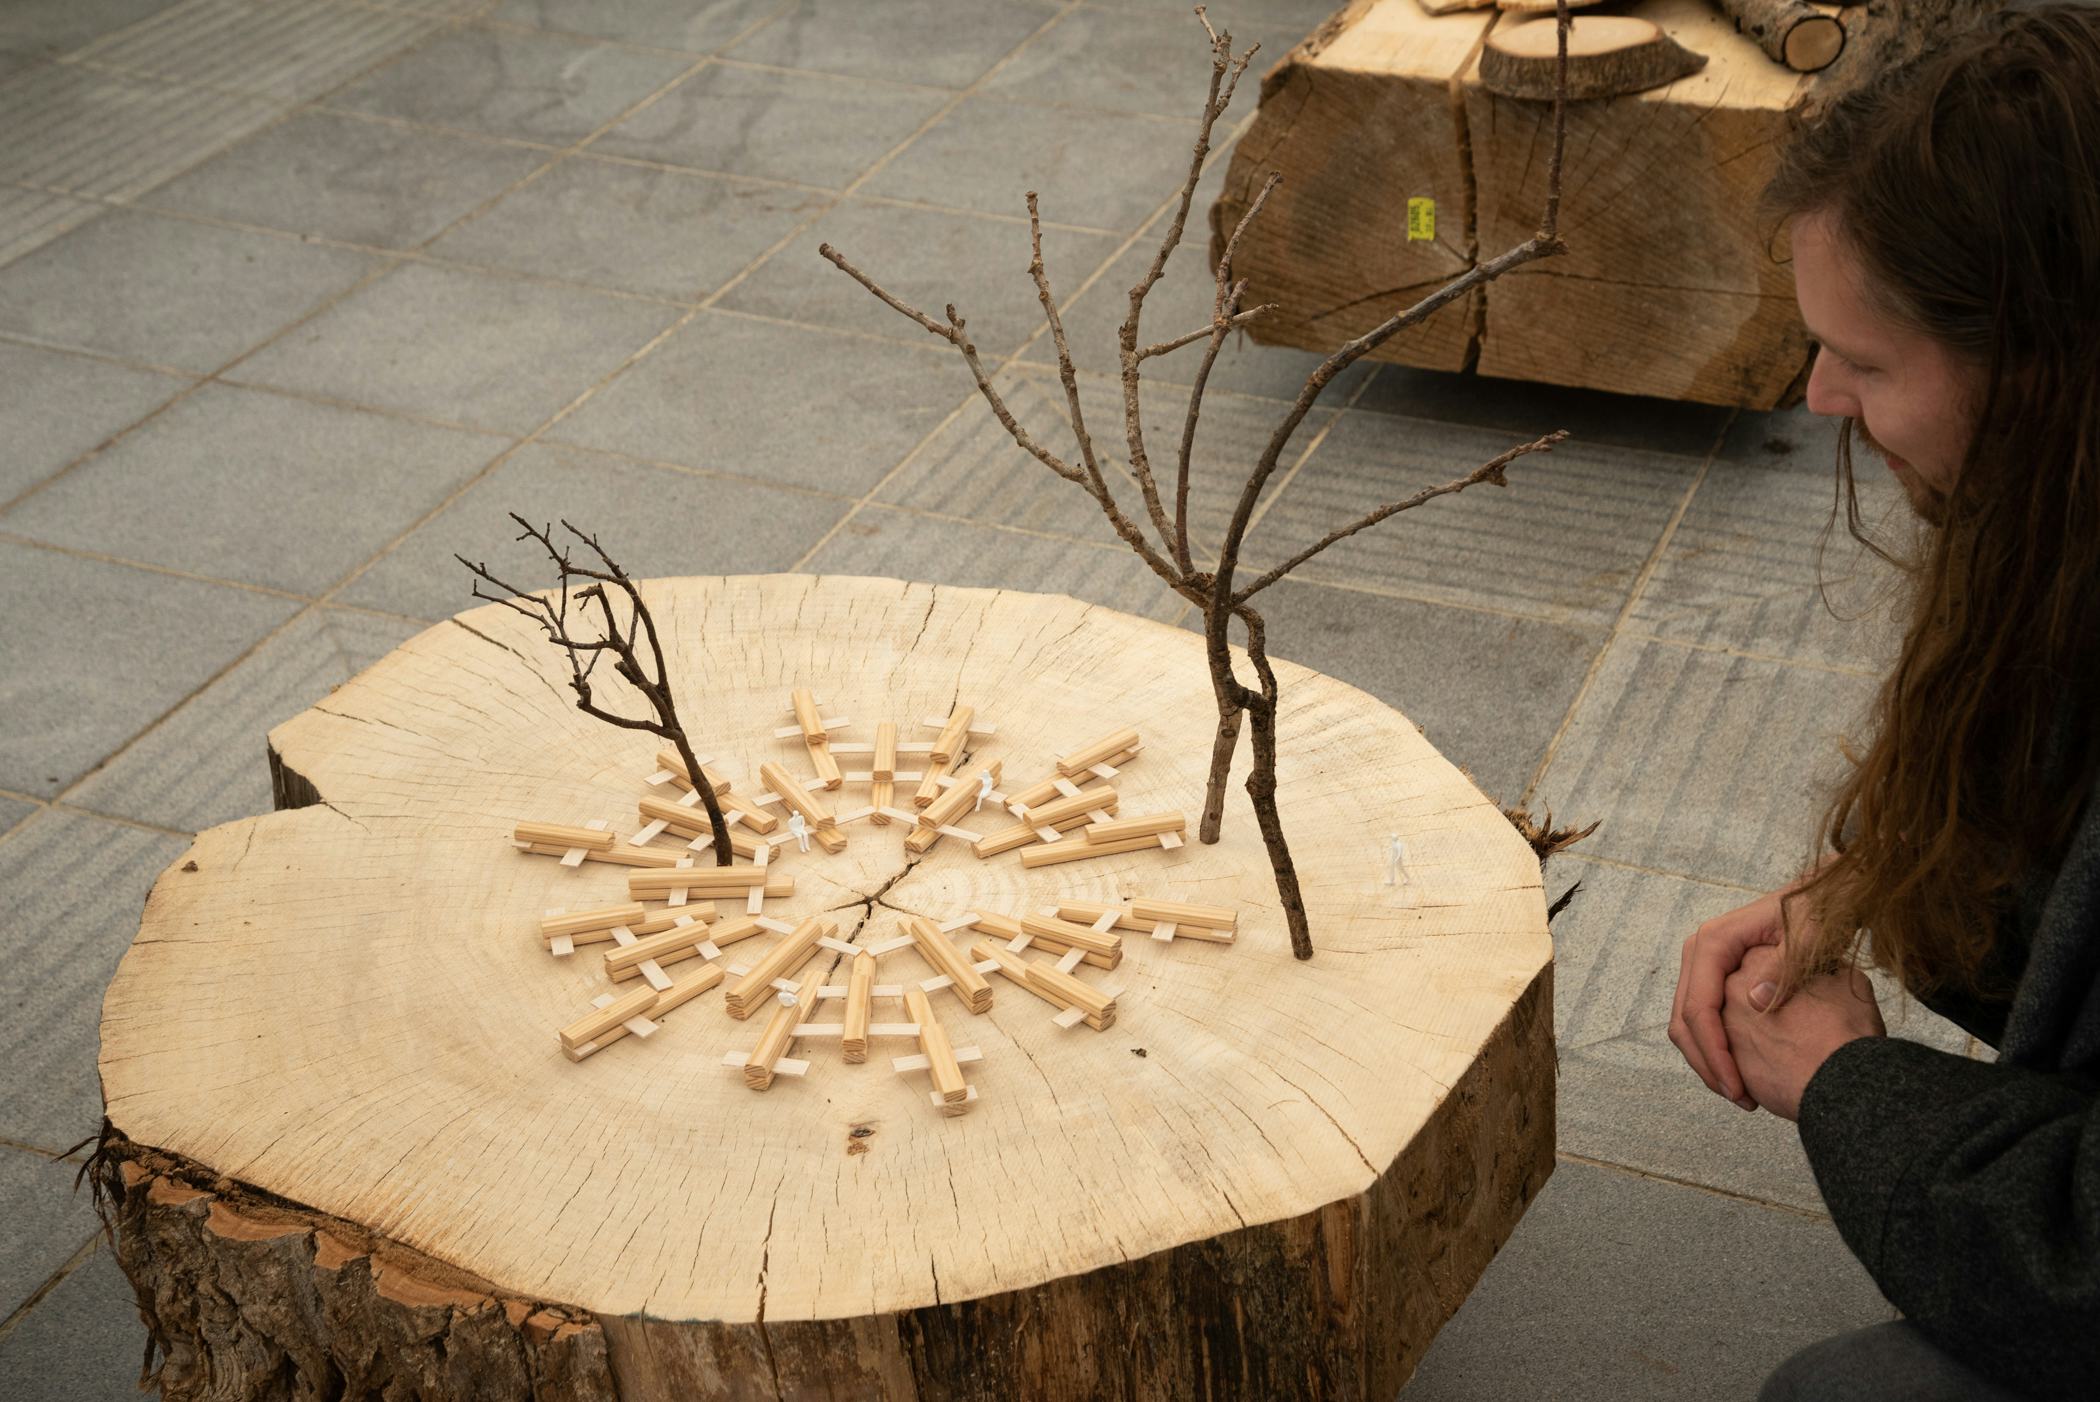 Kunstenaar Elmo Vermijs leende 48 boomstammen en bouwde een parlement